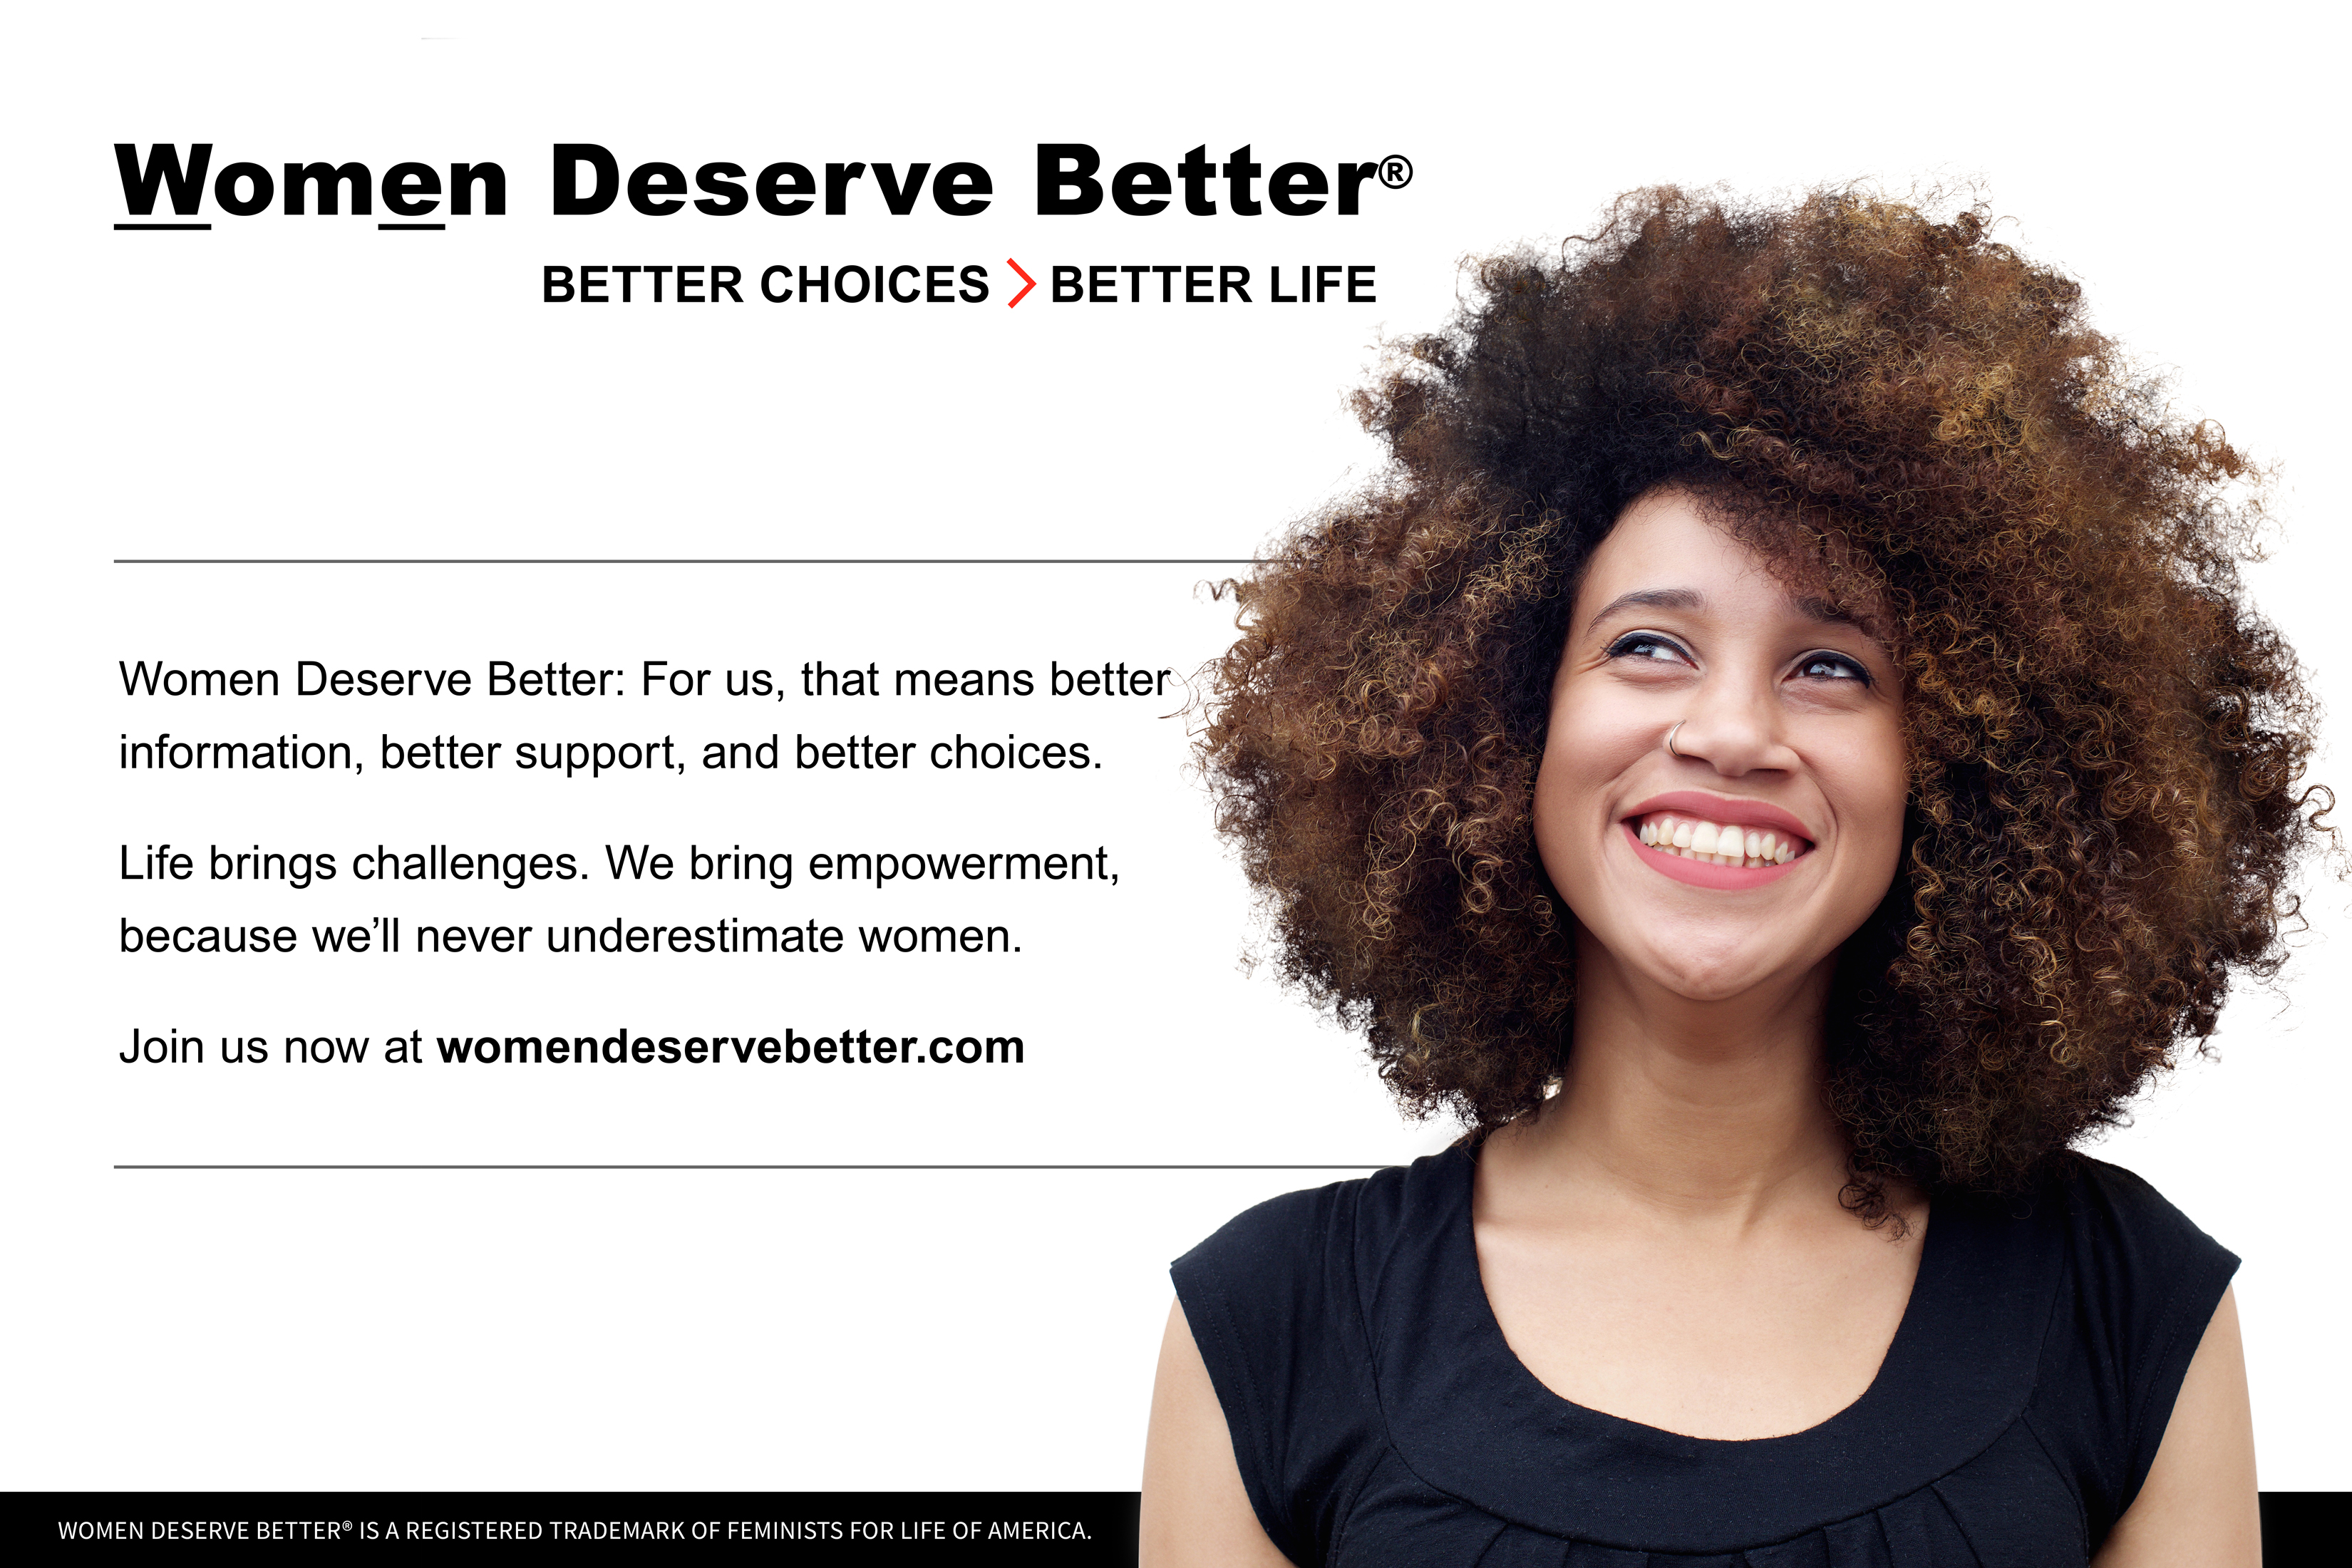 They deserve better. Women support women. Проект жизнь женщины. Better choice. Promote woman.